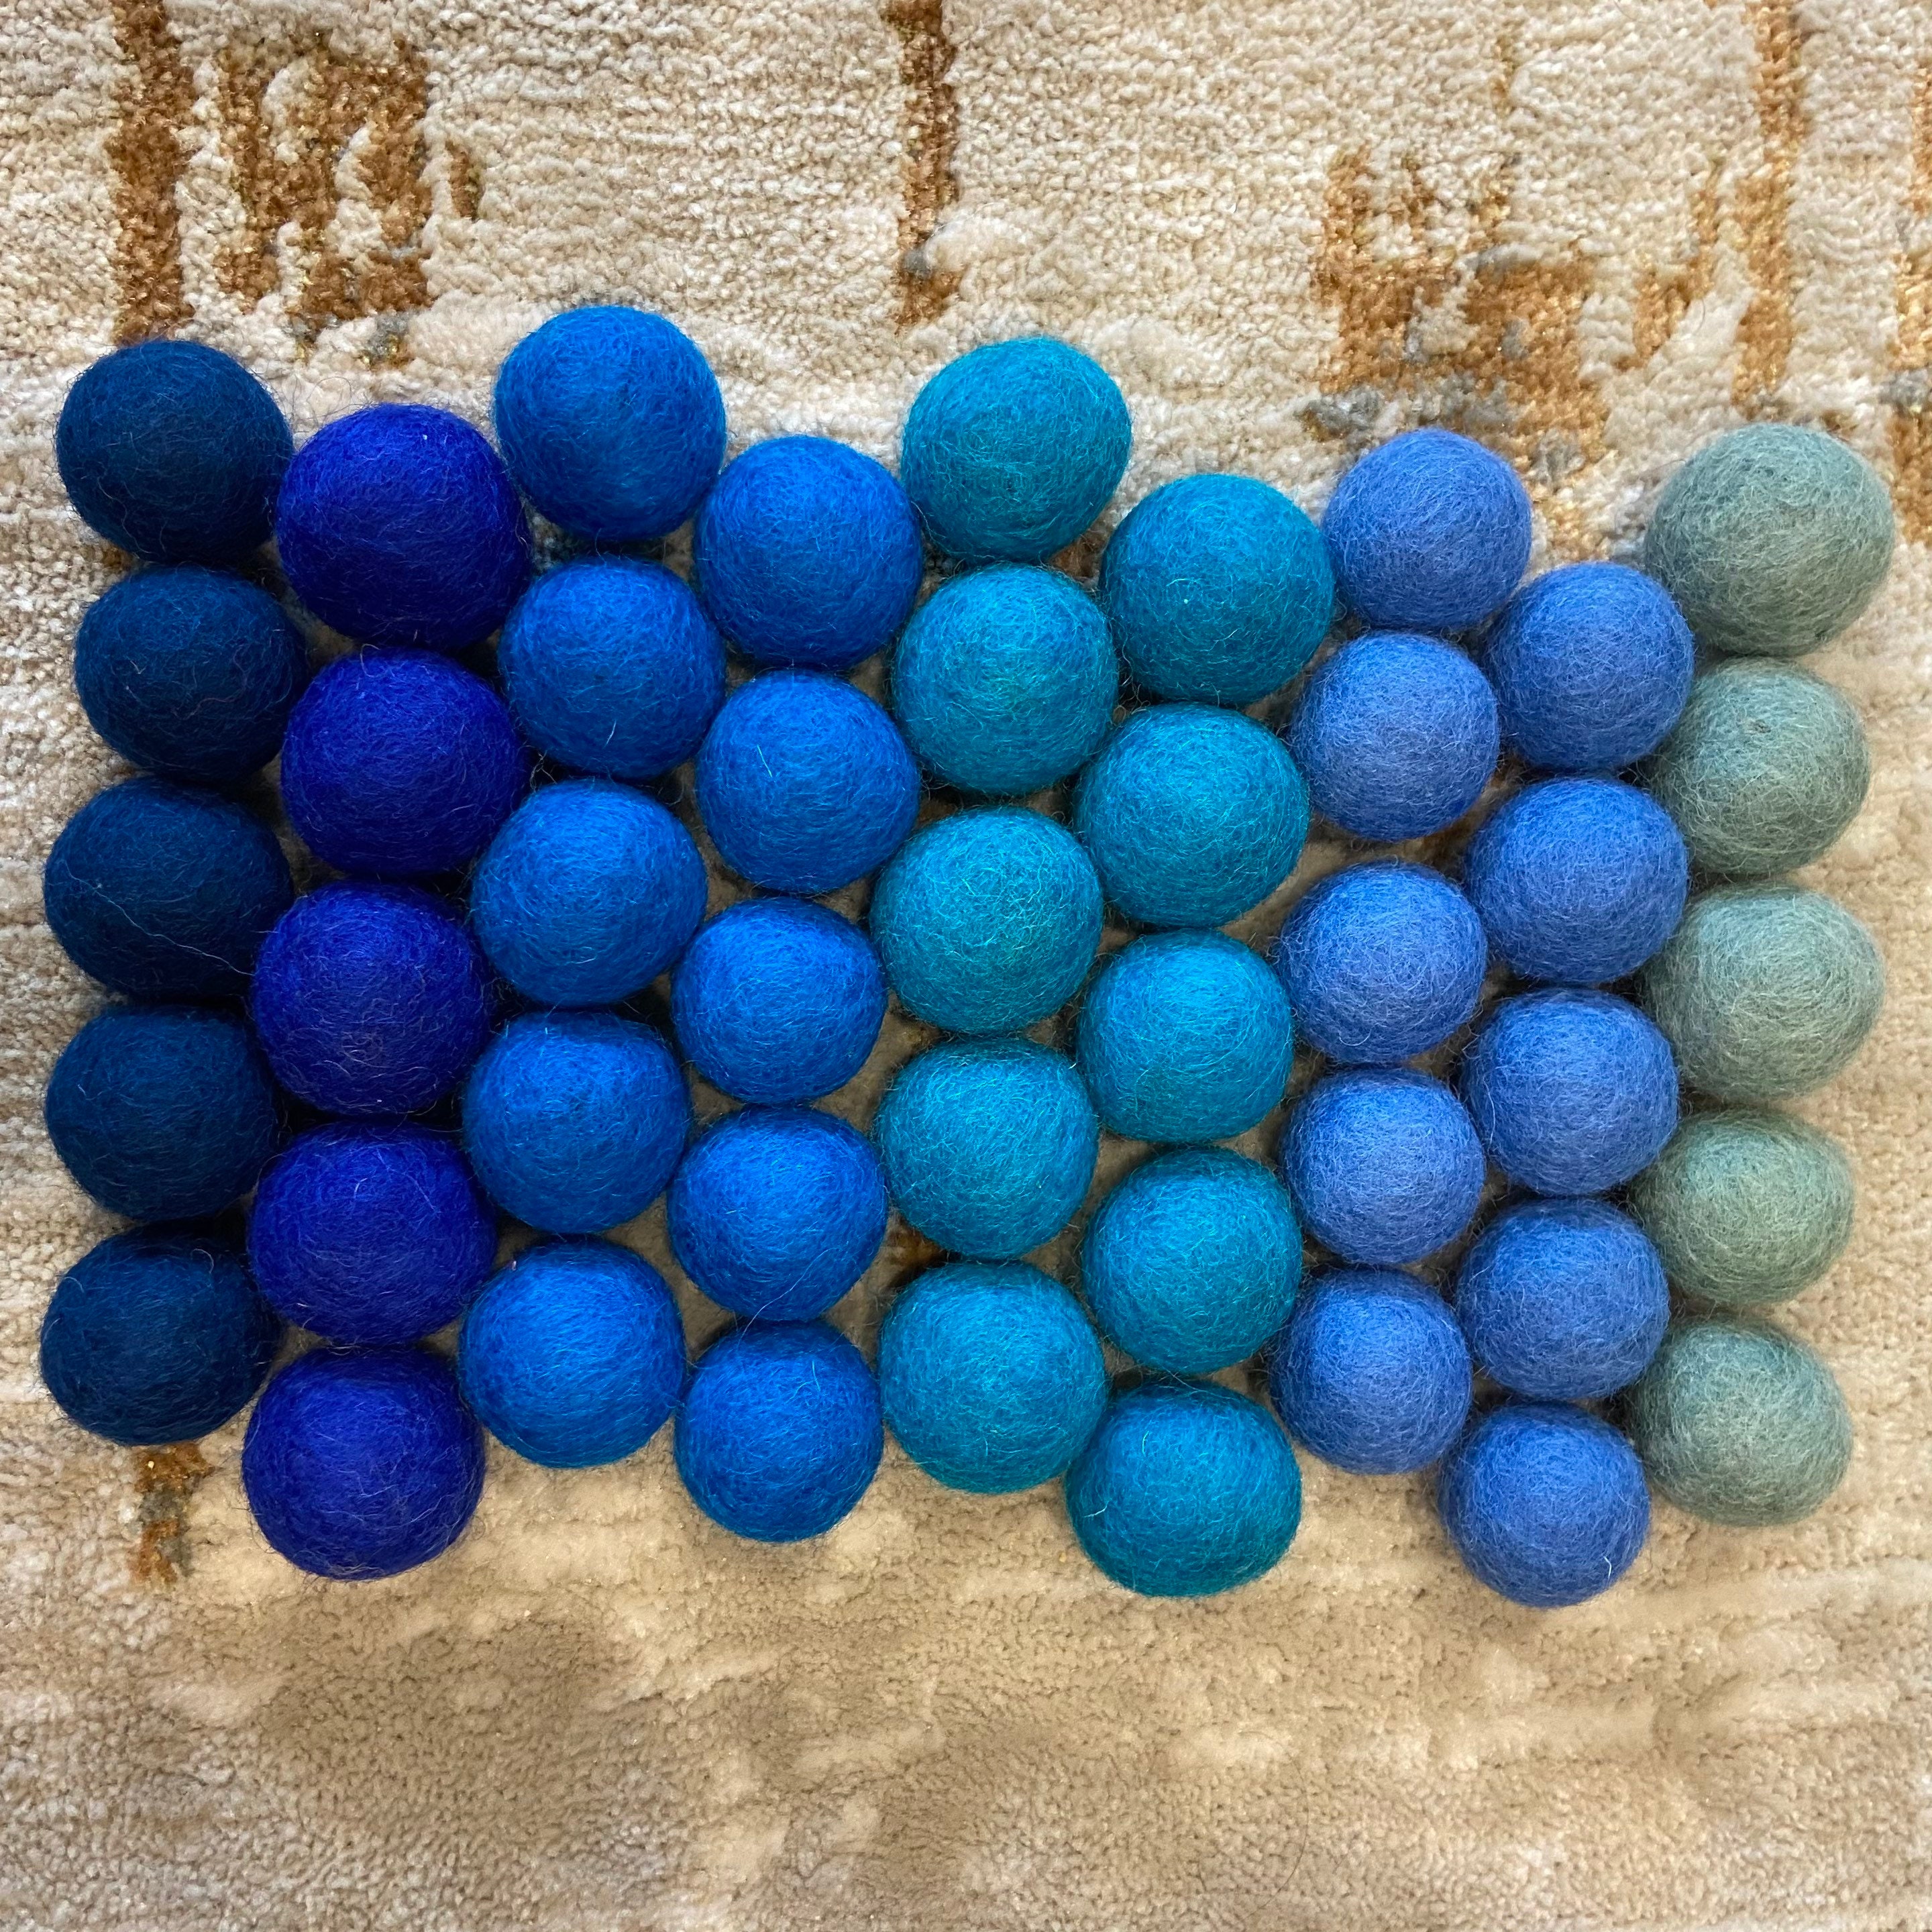 4cm Felt Balls, Wholesale Felt Balls